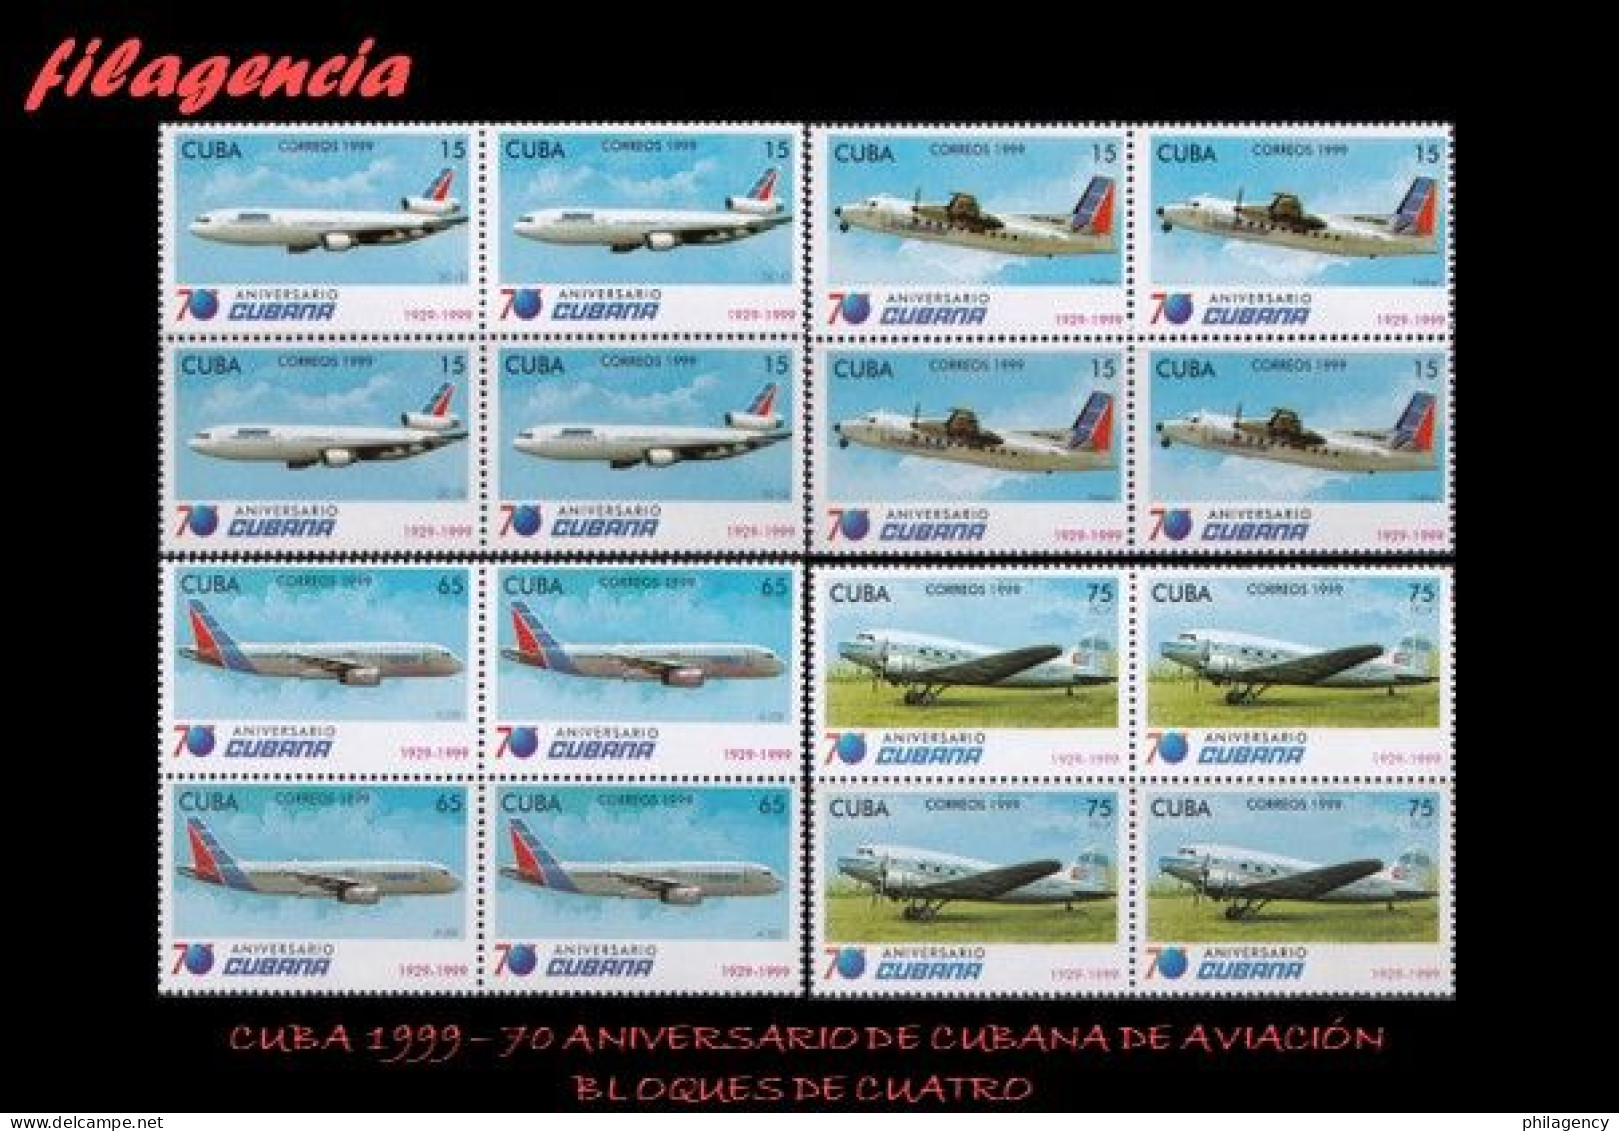 CUBA. BLOQUES DE CUATRO. 1999-23 70 ANIVERSARIO DE CUBANA DE AVIACIÓN - Unused Stamps